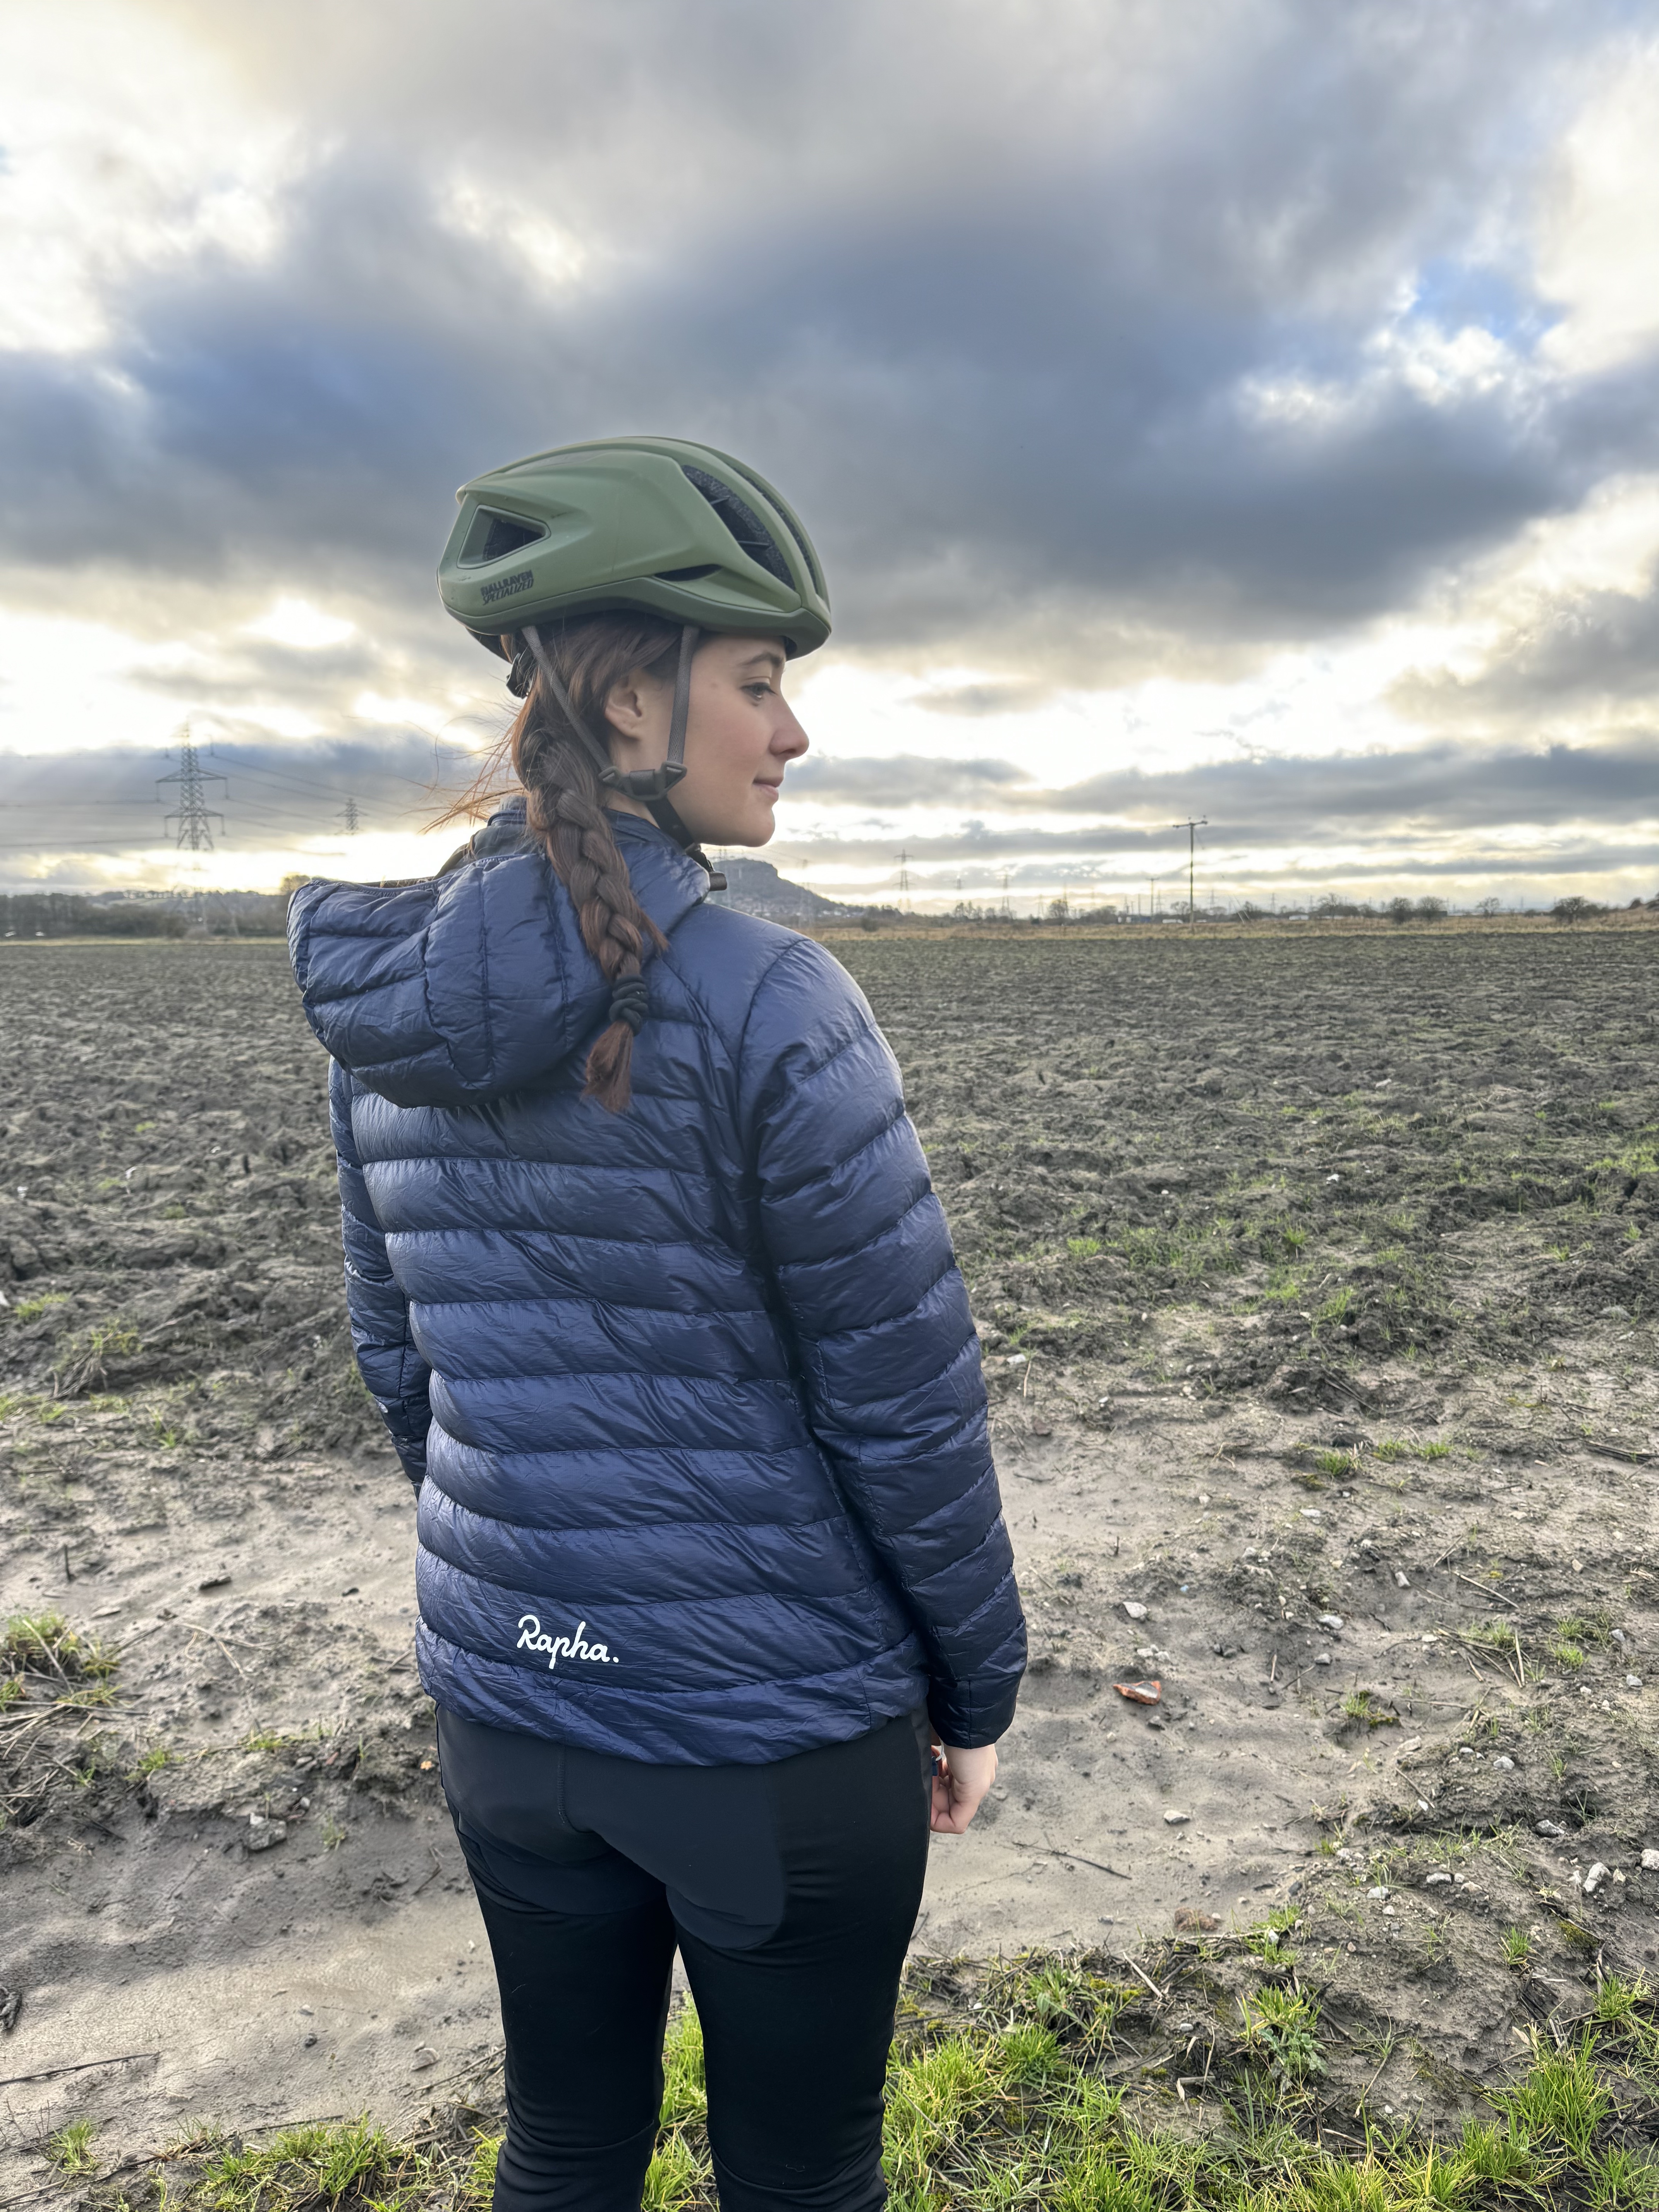 Une femme regarde loin de la caméra vers un champ boueux.  La veste est bleu marine.